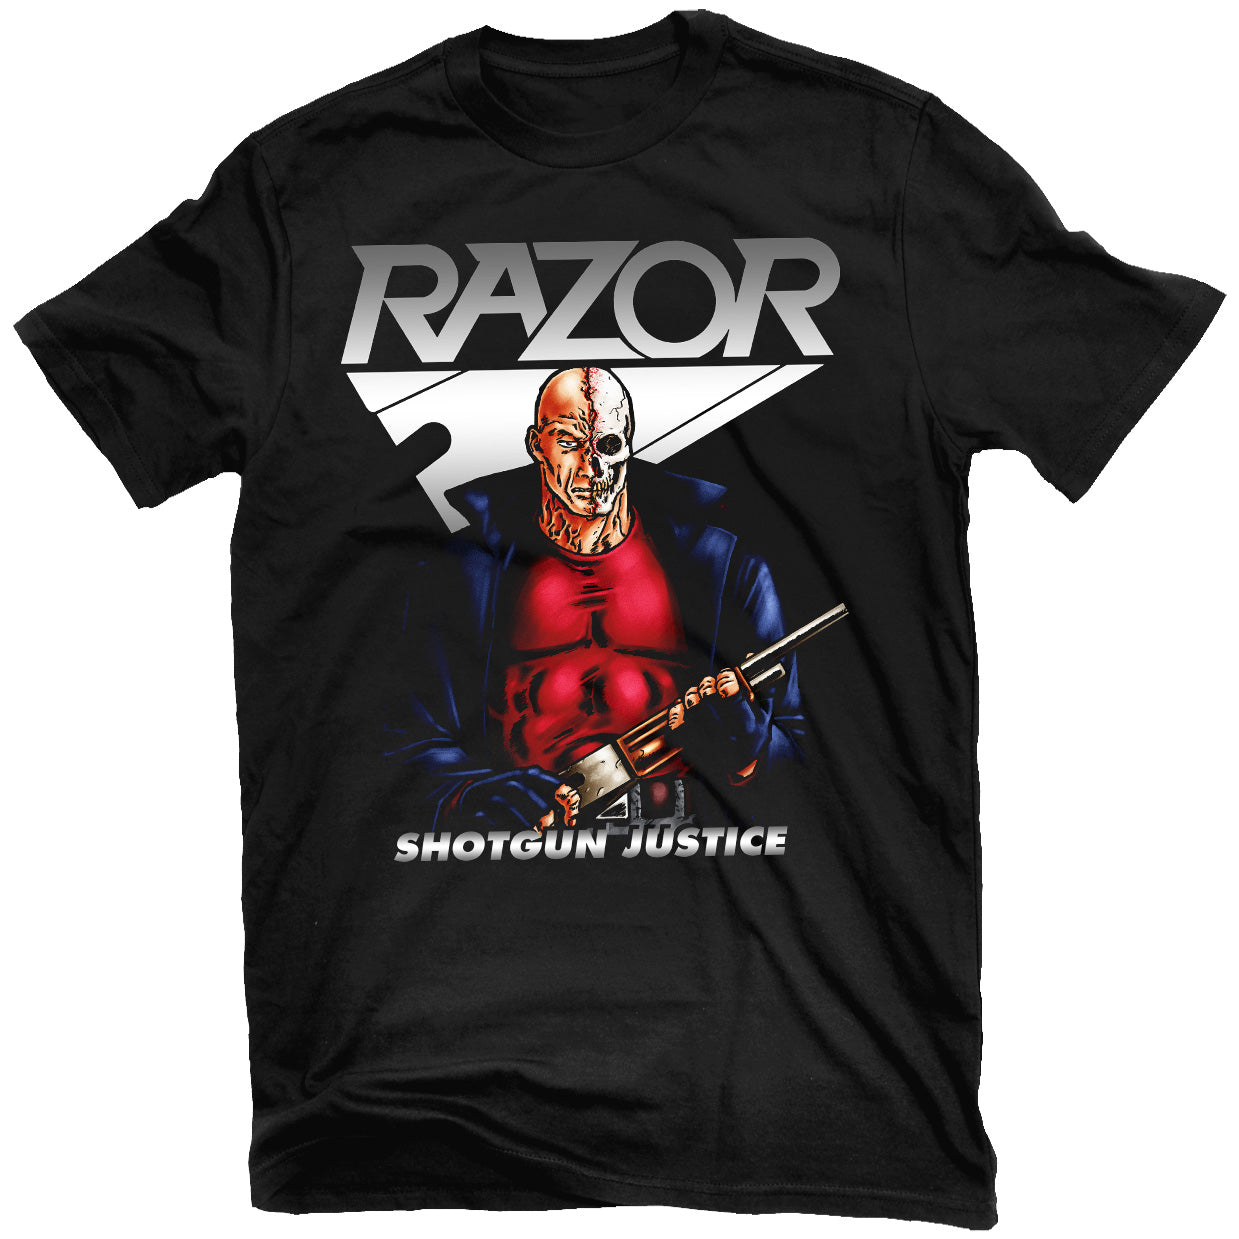 Razor "Shotgun Justice" T-Shirt